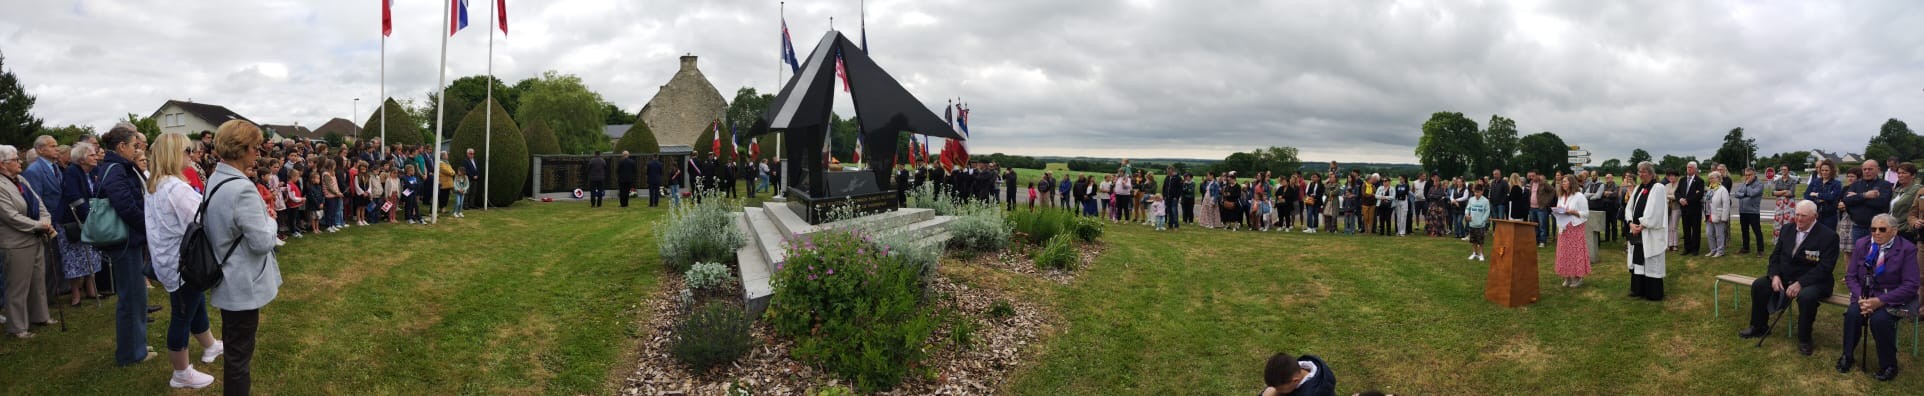 Assemblee presente pour la ceremonie en hommage aux pilotes de typhoons tombes pendant le debarquement en normandie de juin 1944 n 4